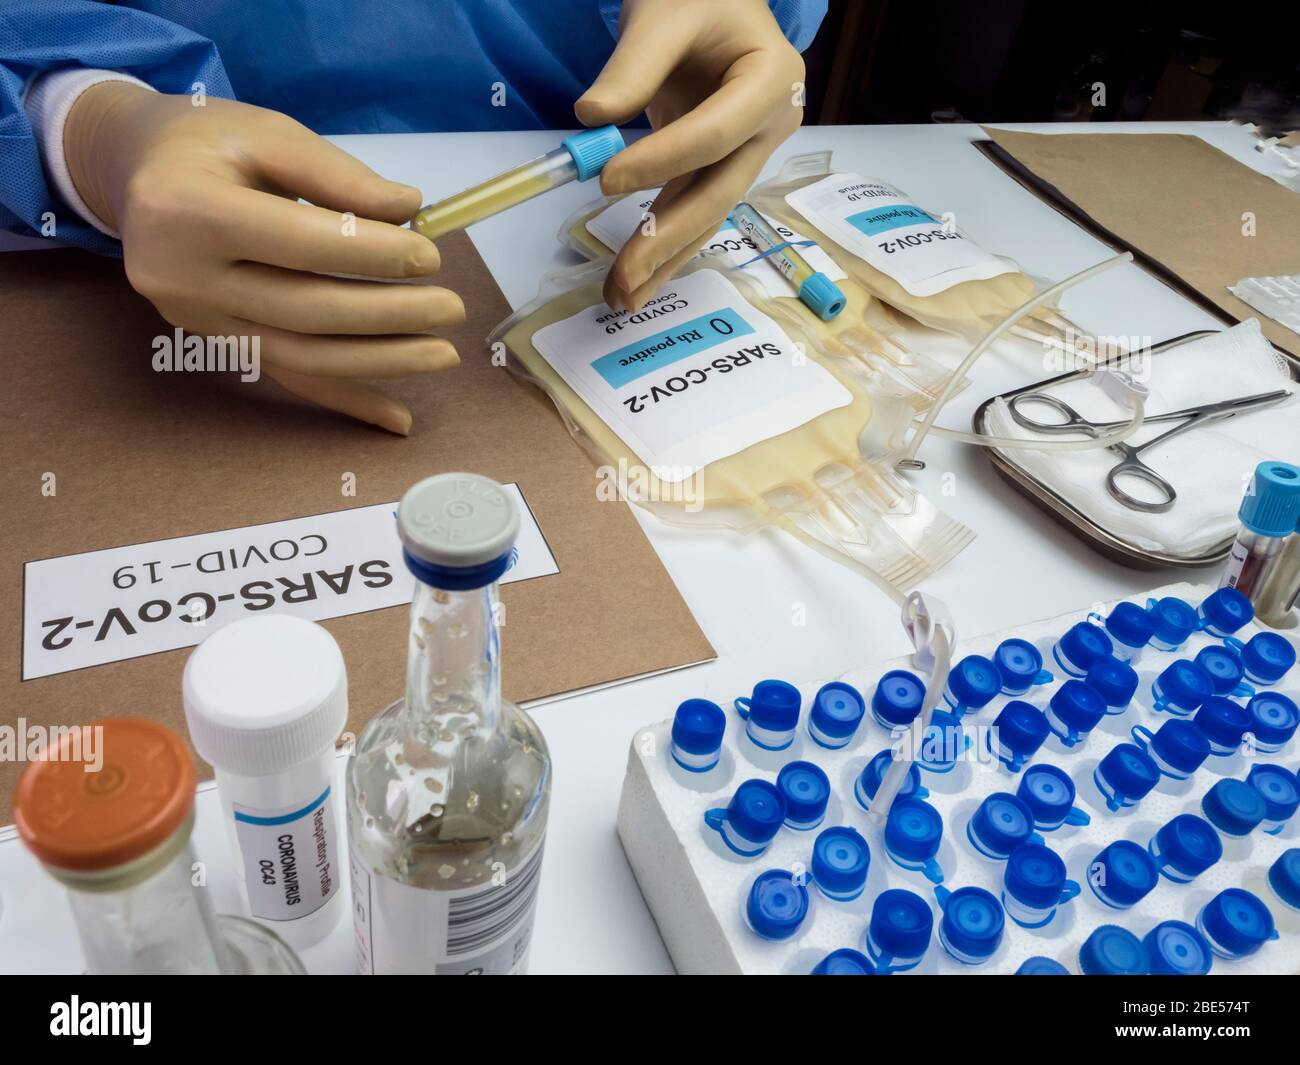 Bolsa de plasma con anticuerpos de personas curadas de SARS-COV-2 Covid-19 preparada en un hospital, imagen conceptual Foto de stock